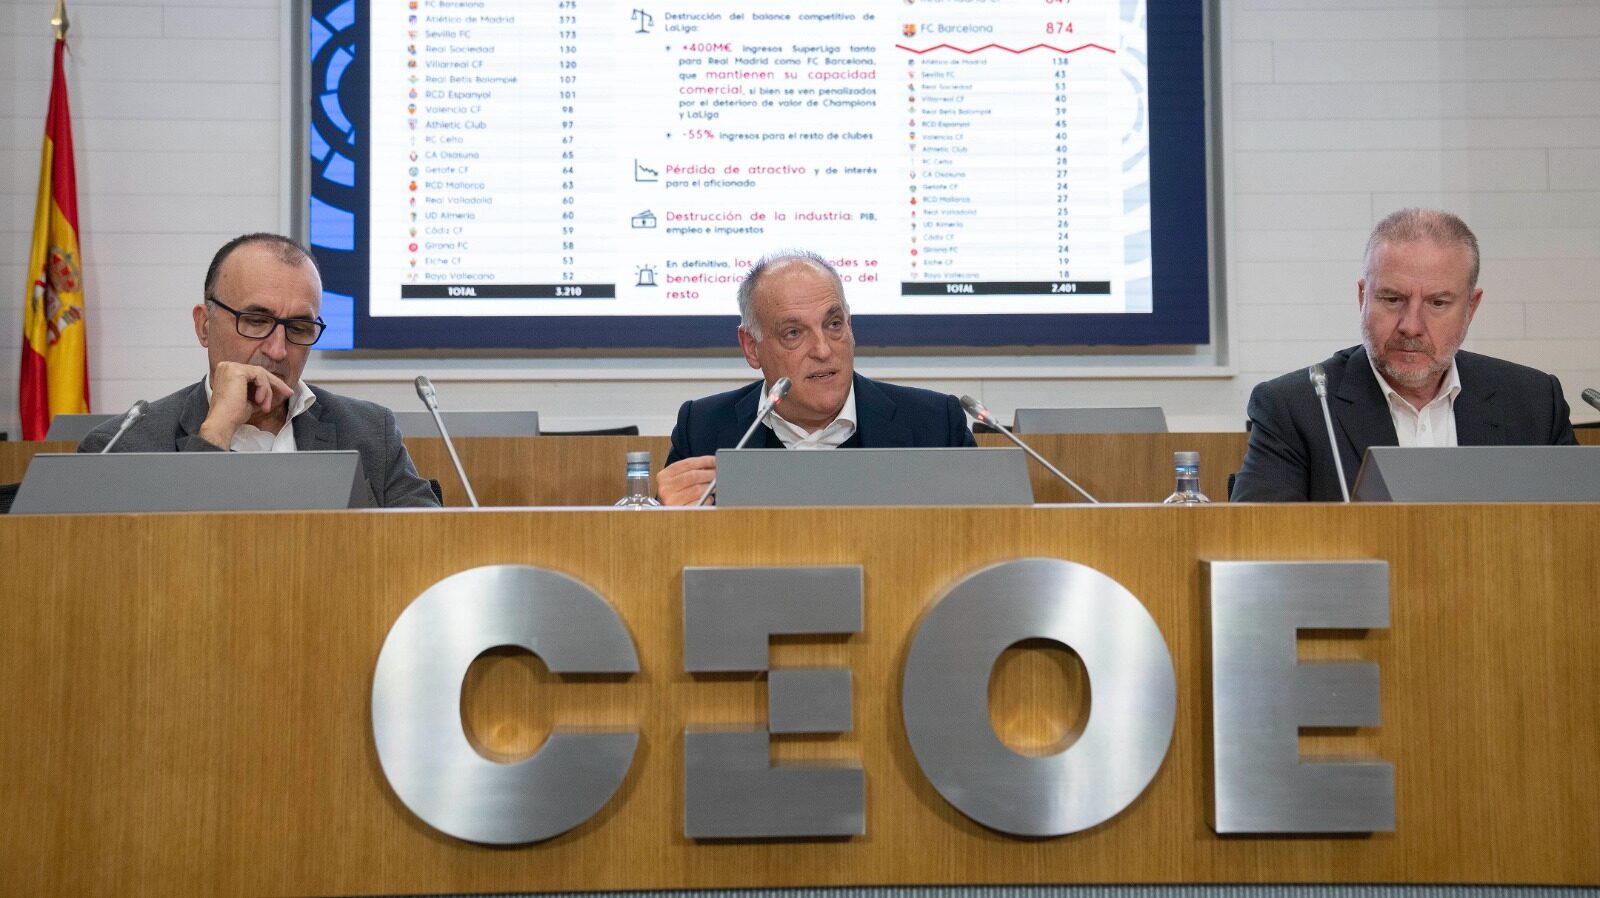 El presidente del LaLiga, Javier Tebas, durante la presentación del estudio